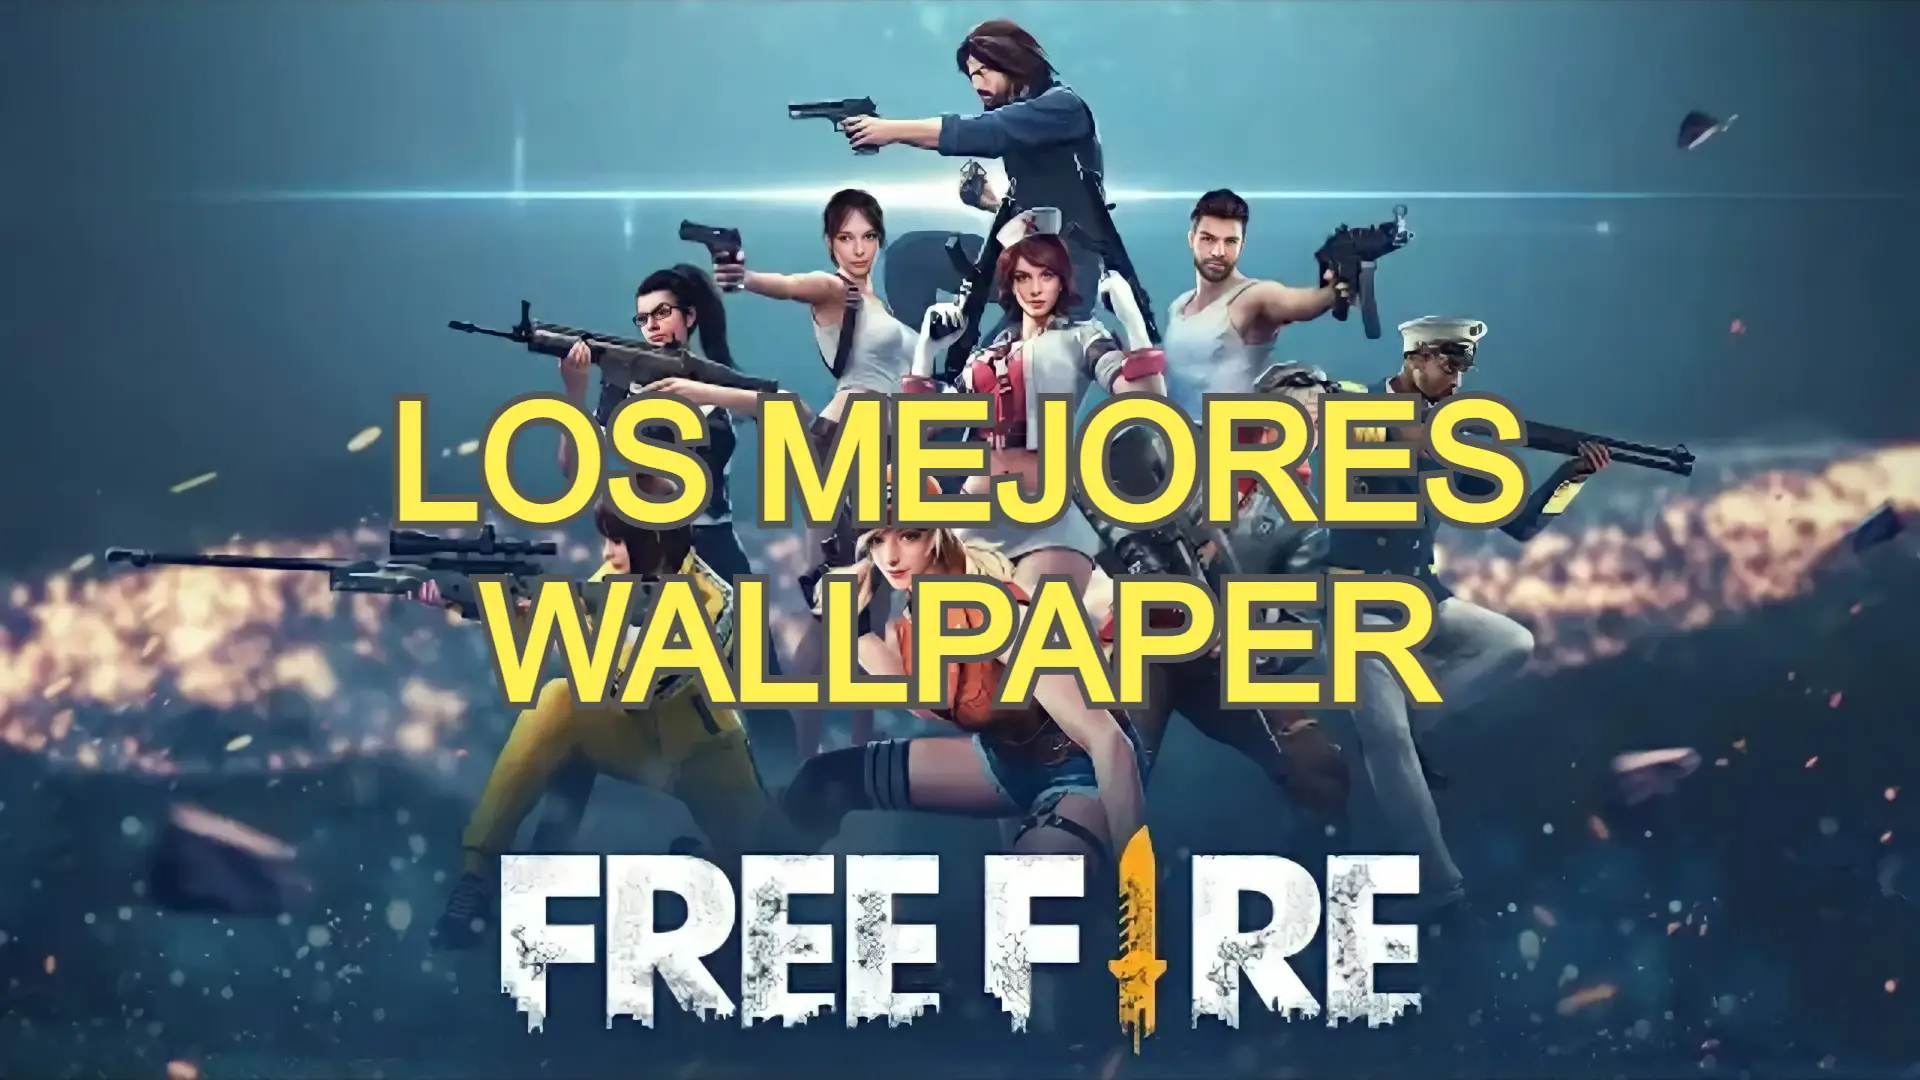 Los mejores wallpaper para free fire